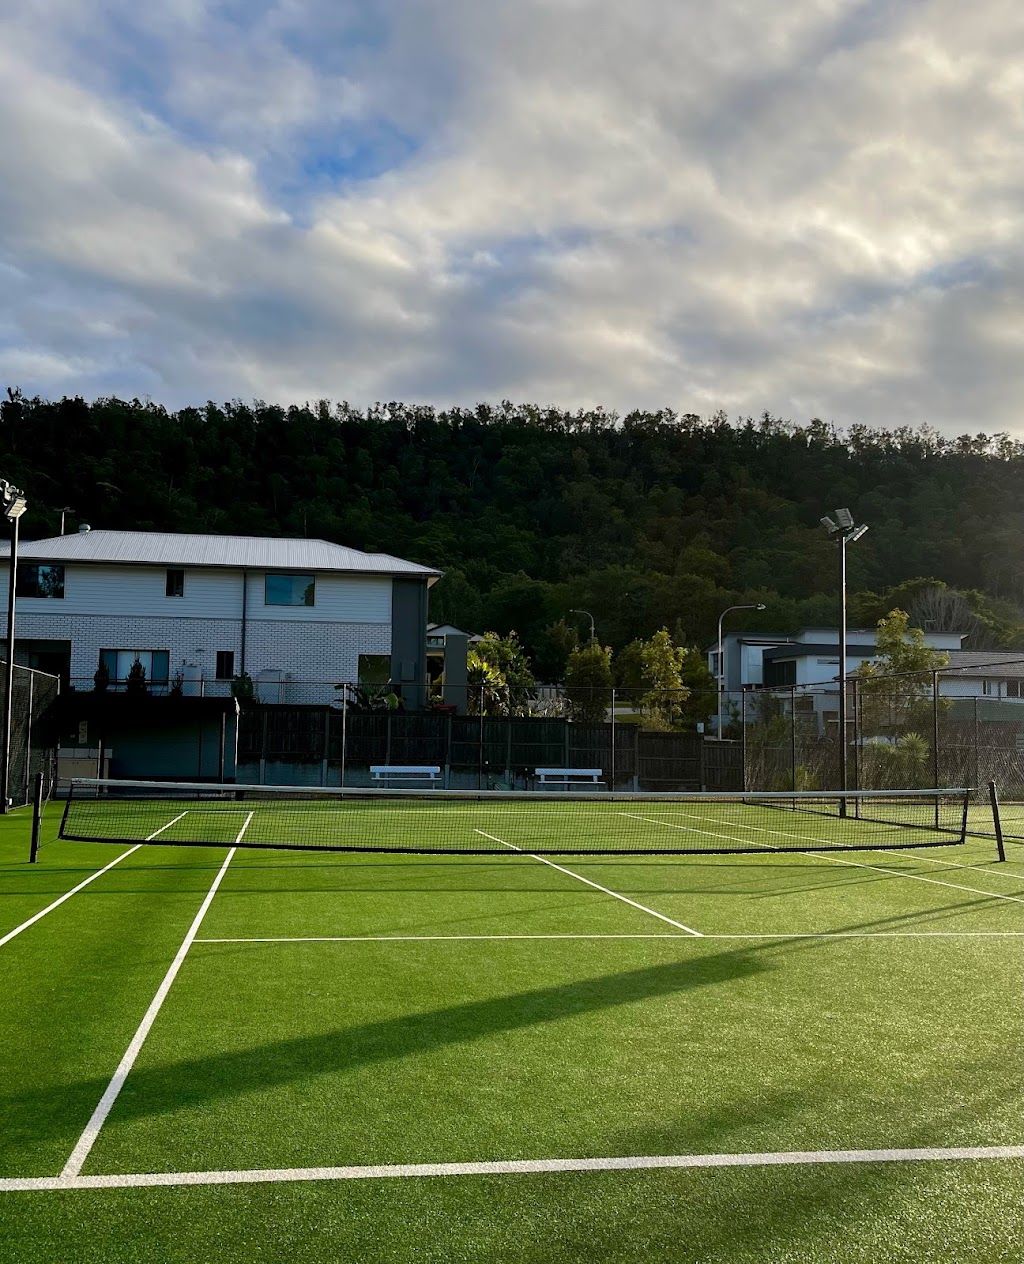 The Gap Tennis Club | 200 Settlement Rd, The Gap QLD 4061, Australia | Phone: 0408 187 741